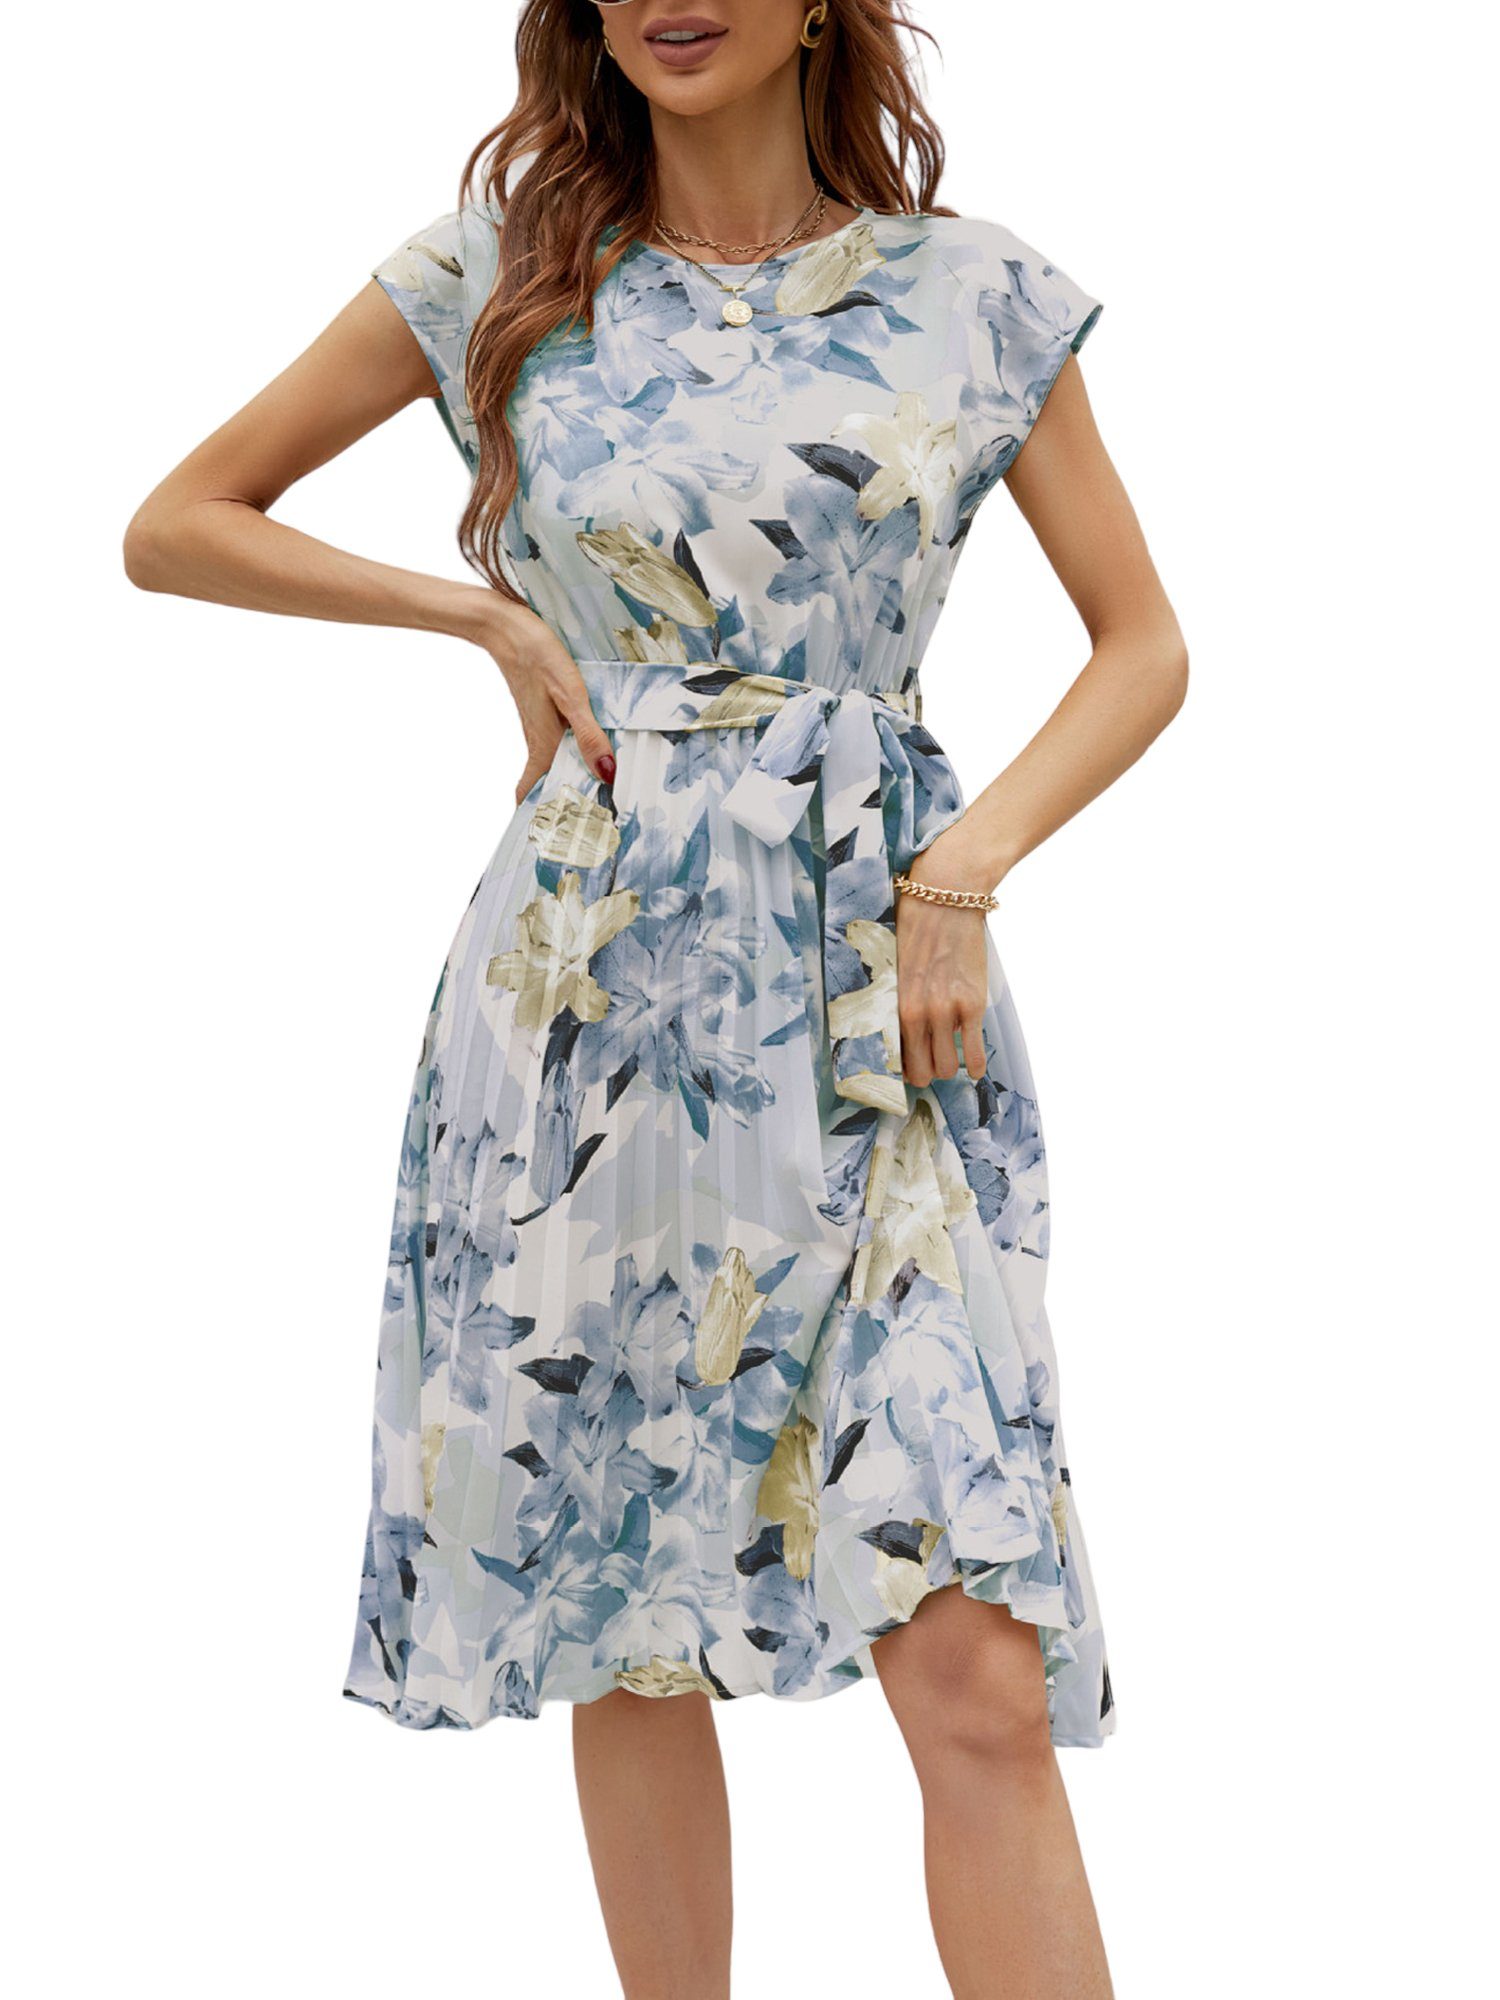 PYL A-Linien-Kleid Damen Chiffon Druckkleid mit Selbst Gürtel,Sommerkleid  36-42 Größe